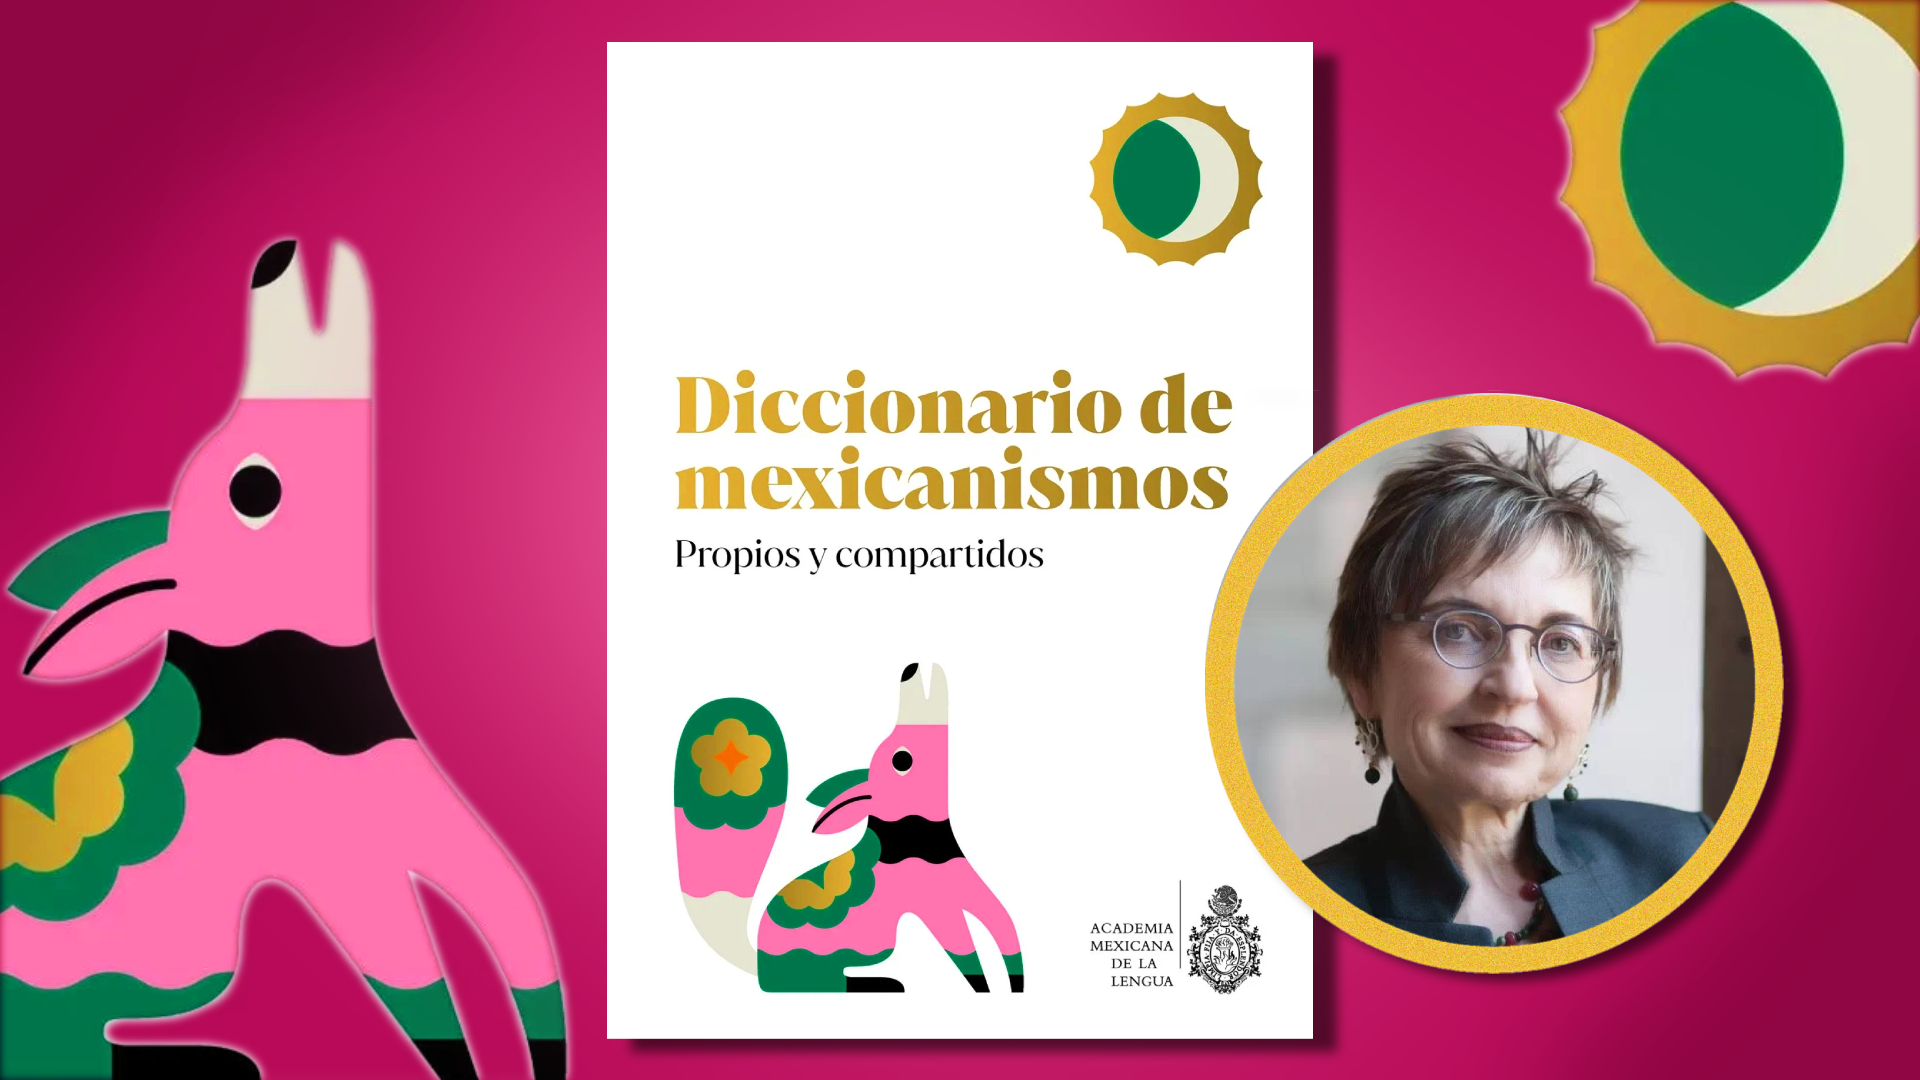 Concepción Company Company habla de "Diccionario de Mexicanismos. propios y compoartidos".